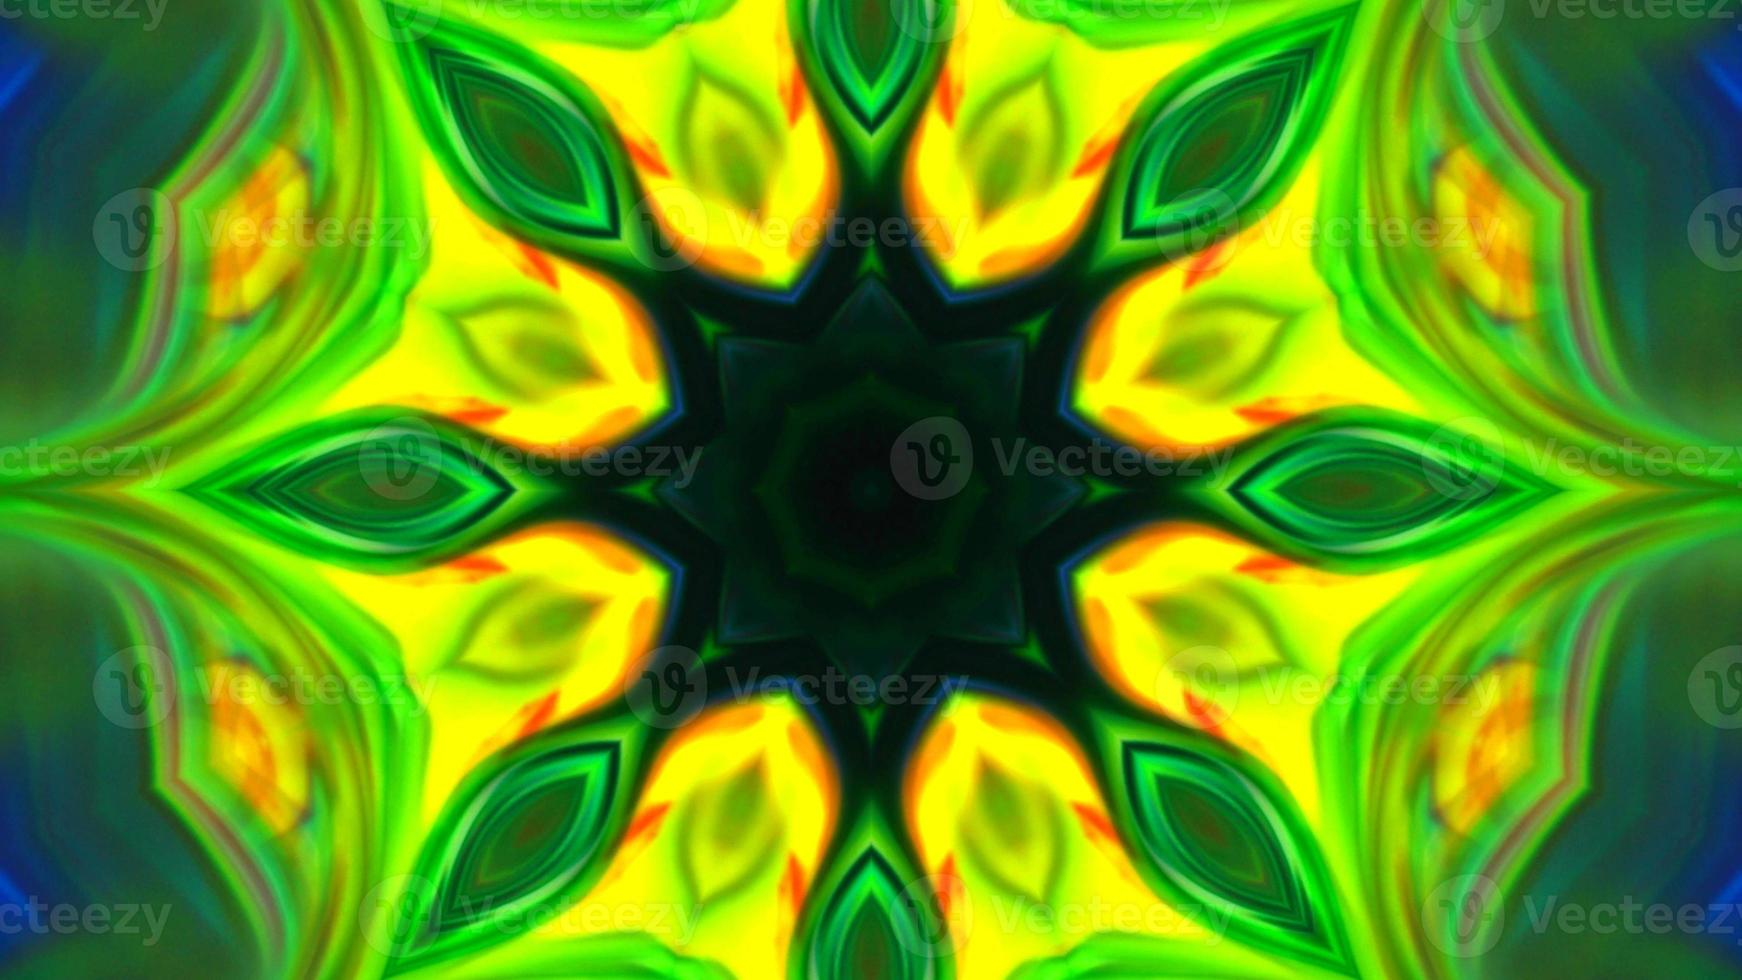 textura de caleidoscópio padrão colorido abstrato foto